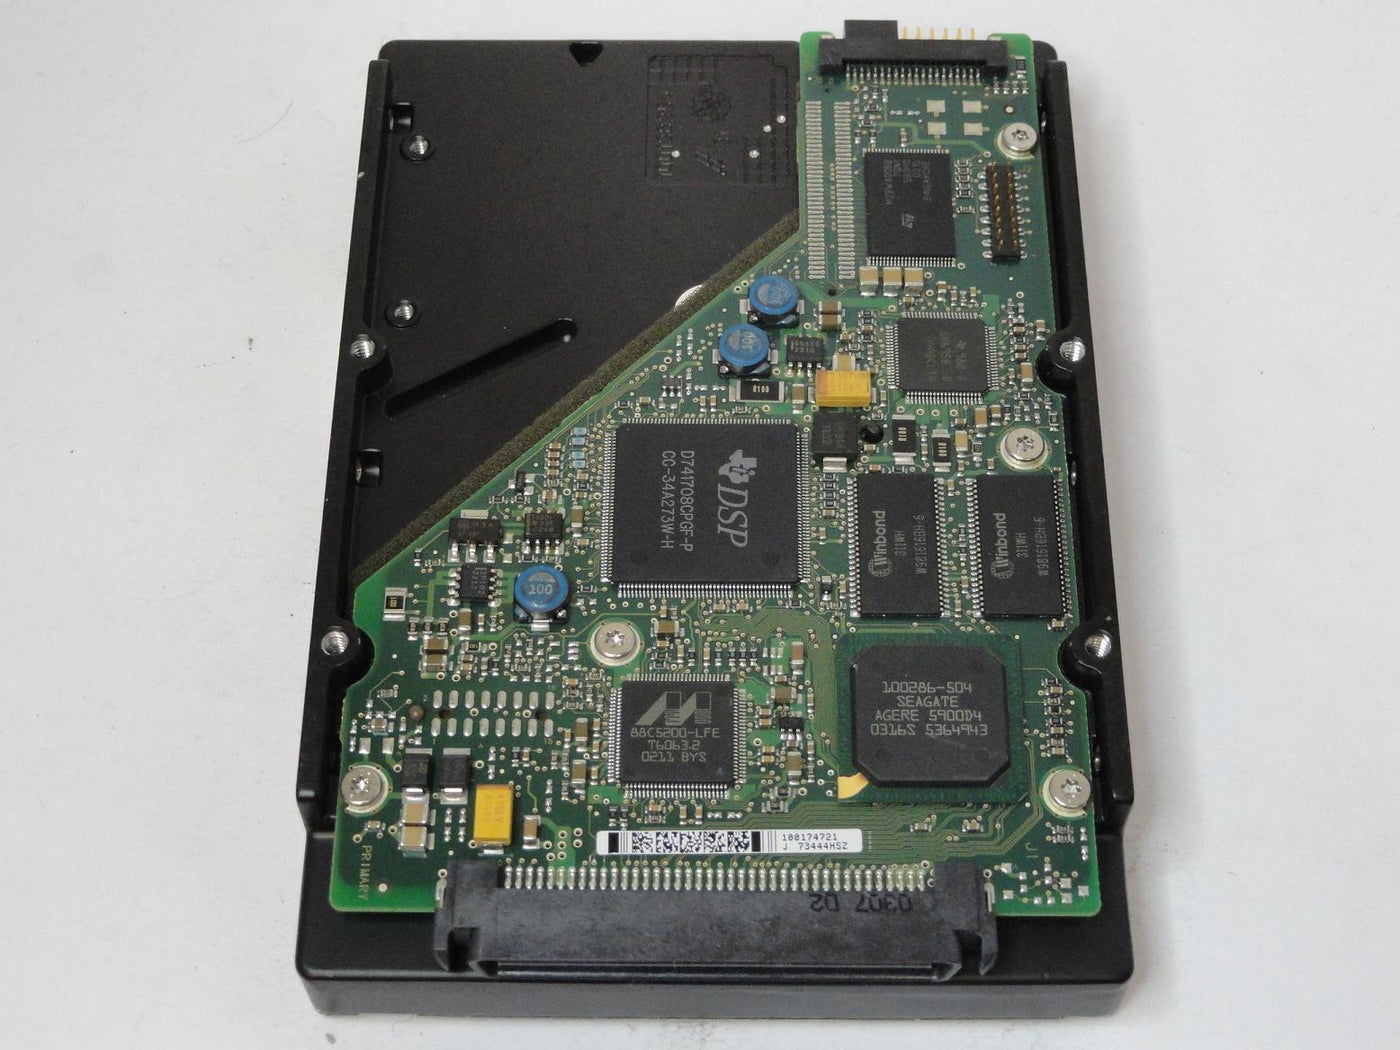 MC5461_9U3001-001_Seagate 18GB SCSI 80 Pin 10Krpm 3.5in HDD - Image2